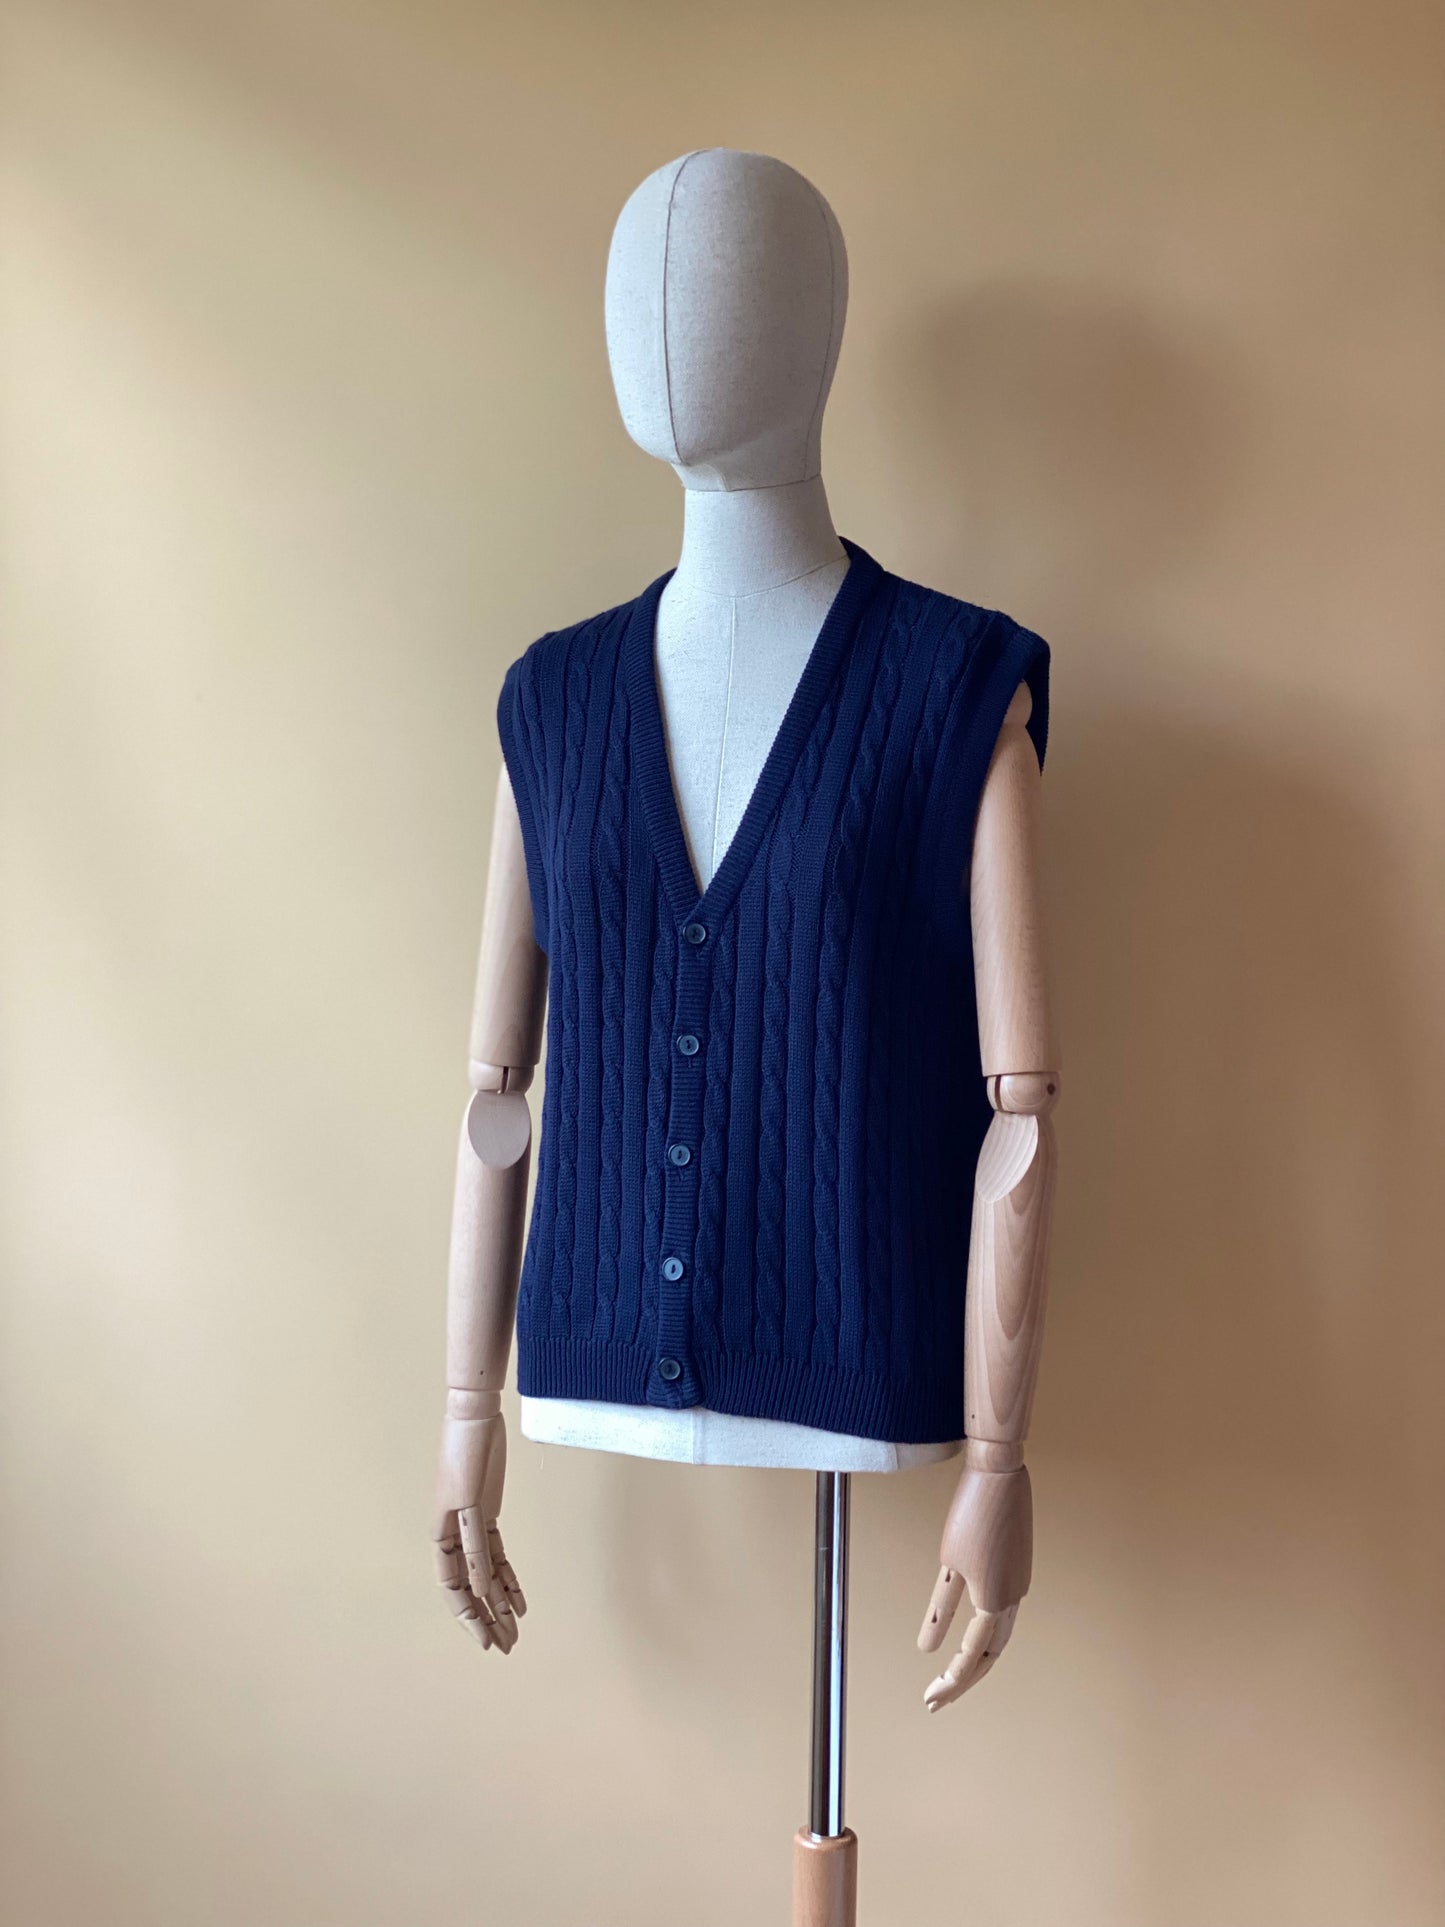 Vintage Cable Knit Blue Vest